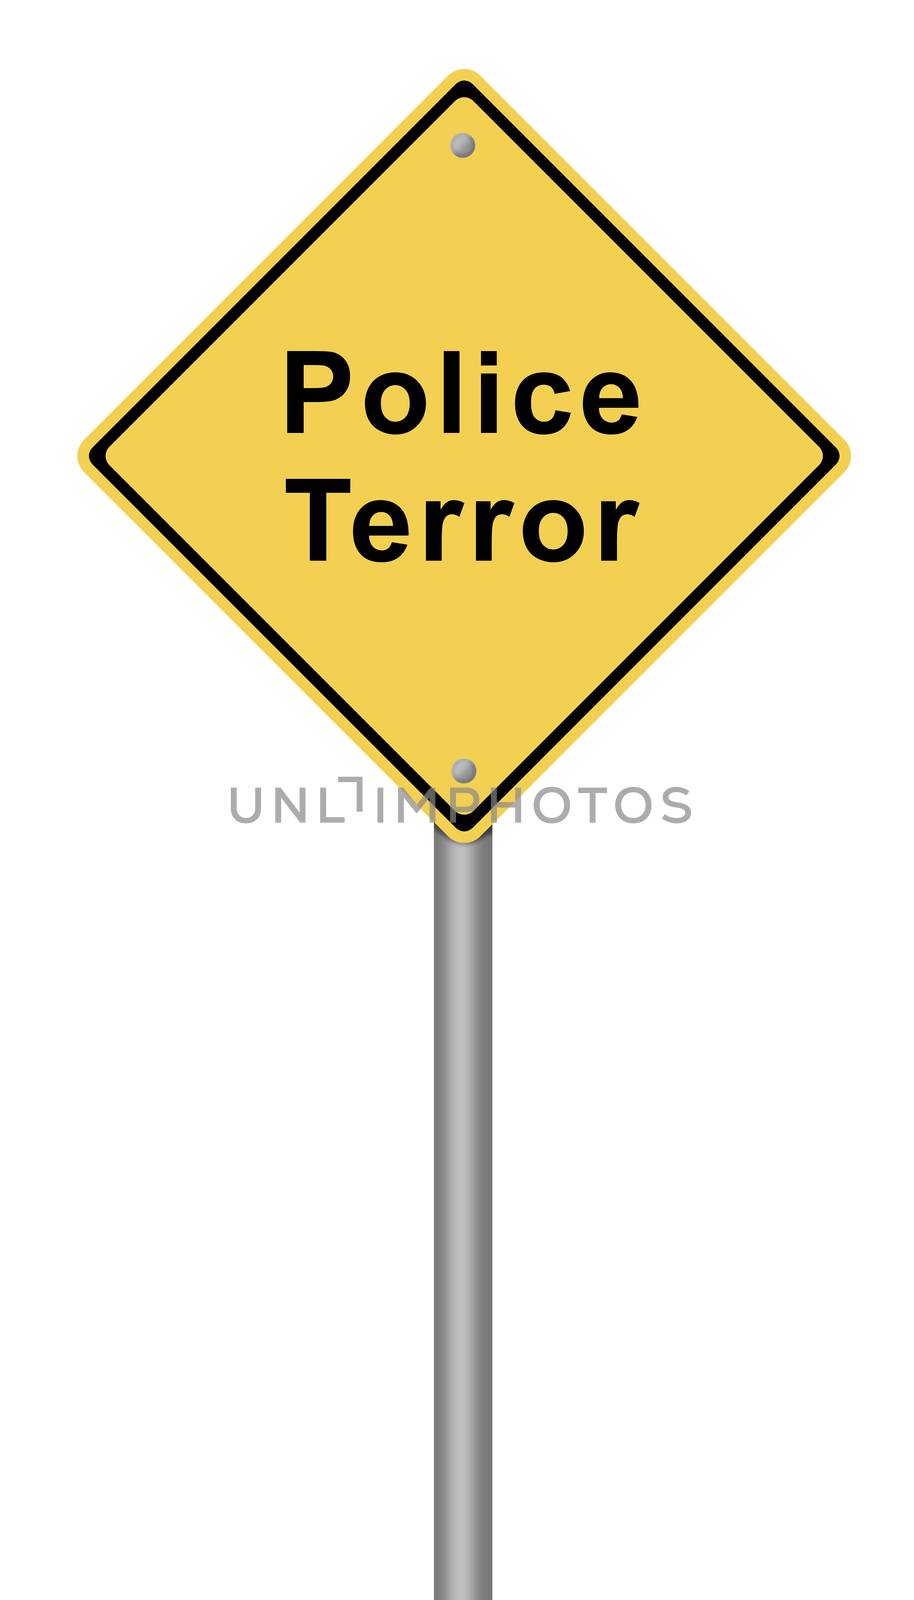 Police Terror by hlehnerer